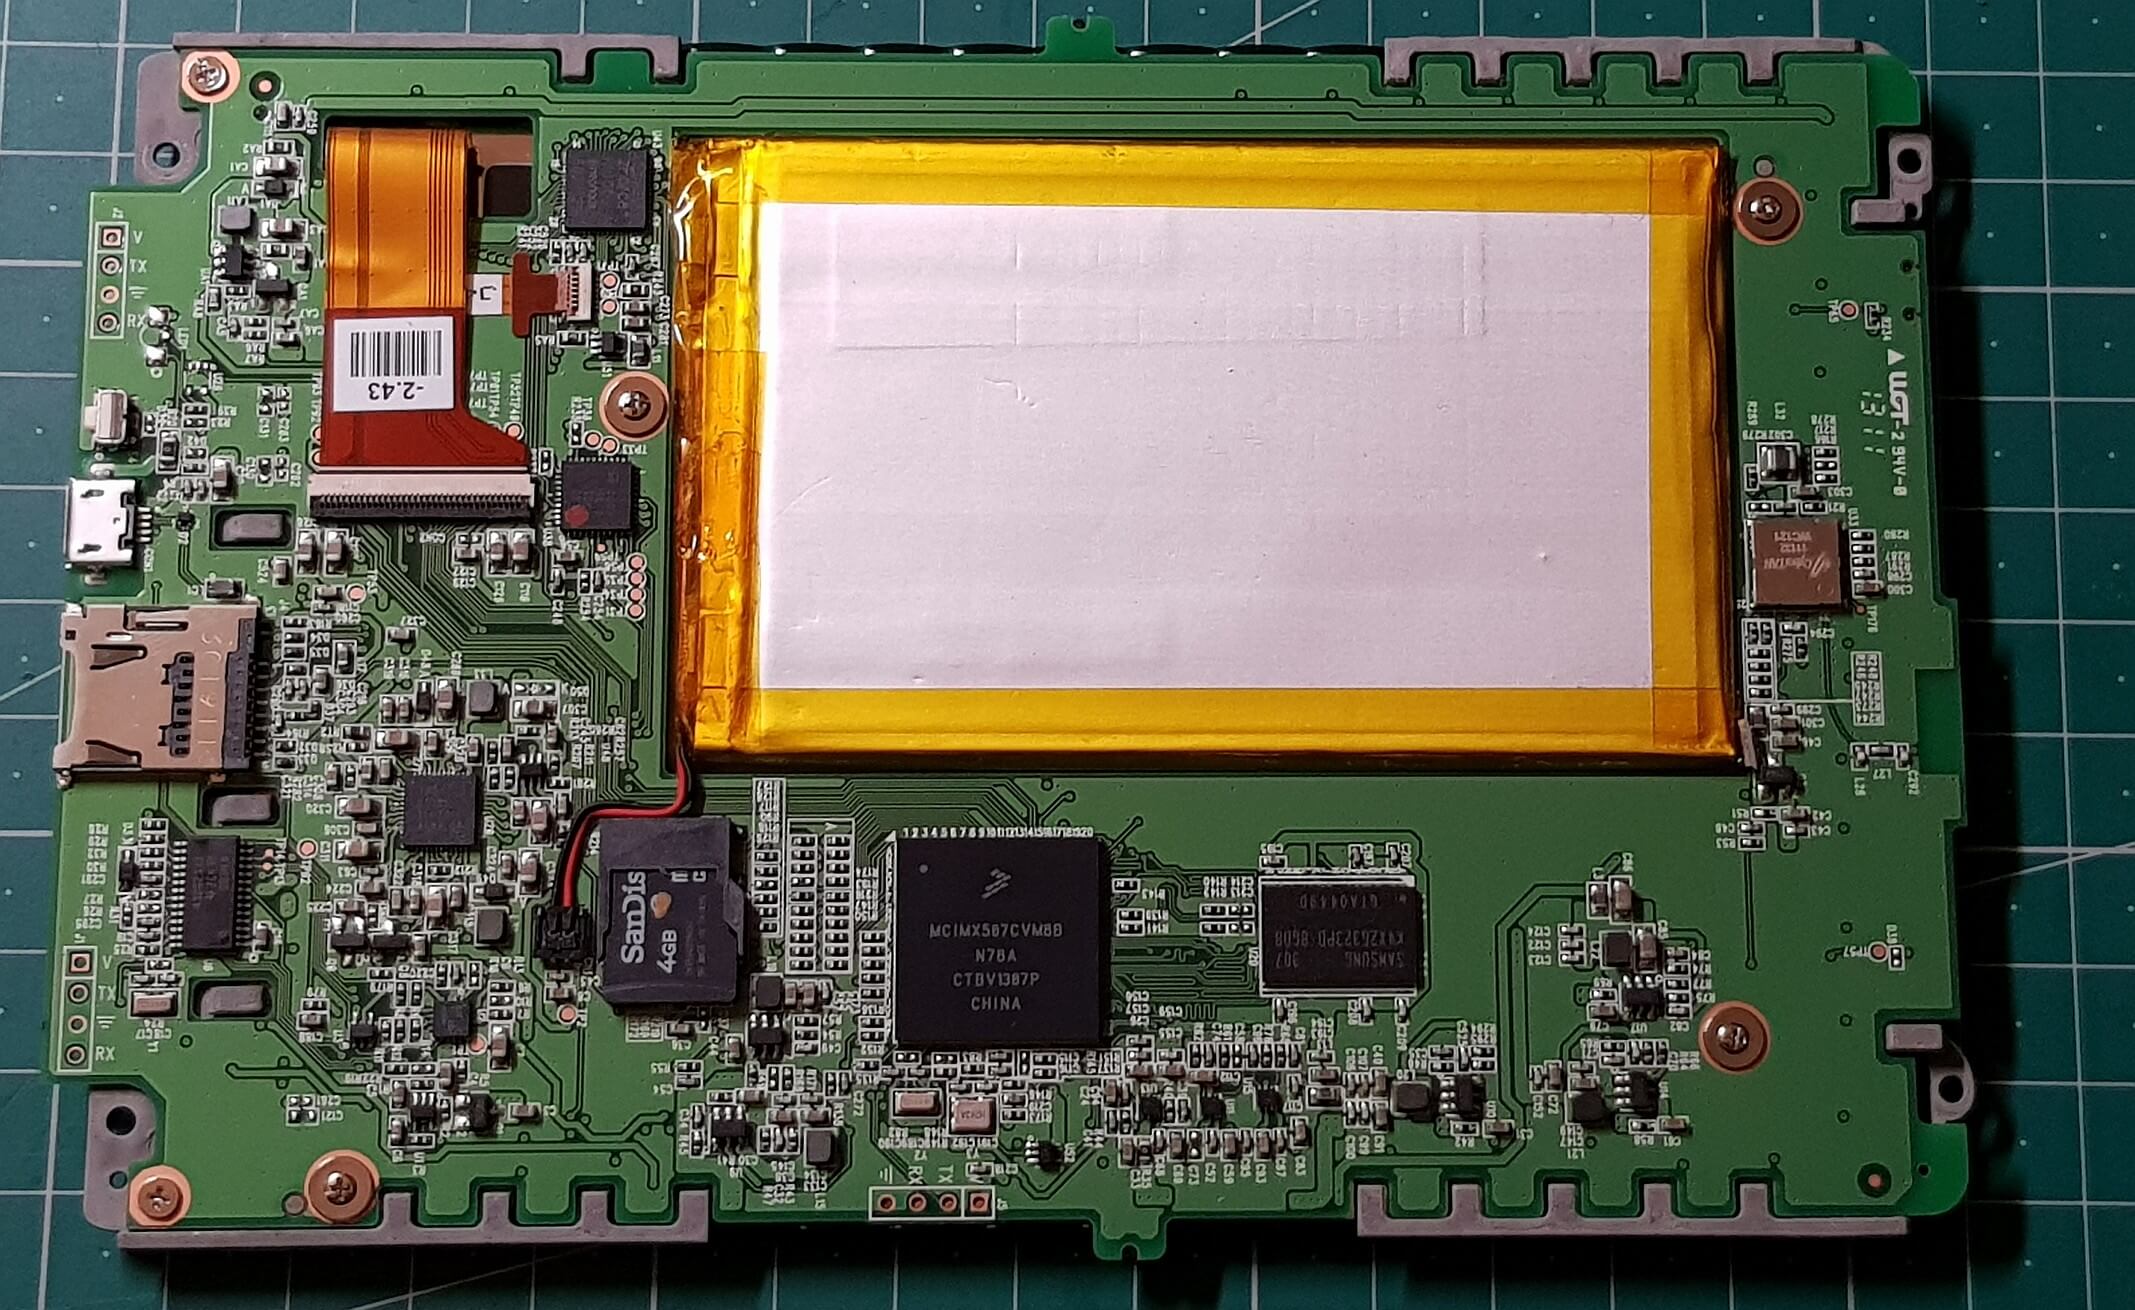 Freigelegte Platine des Tolino shine mit SD-Karten-Schacht, Prozessoren und flachem Li-Ionen-Akku